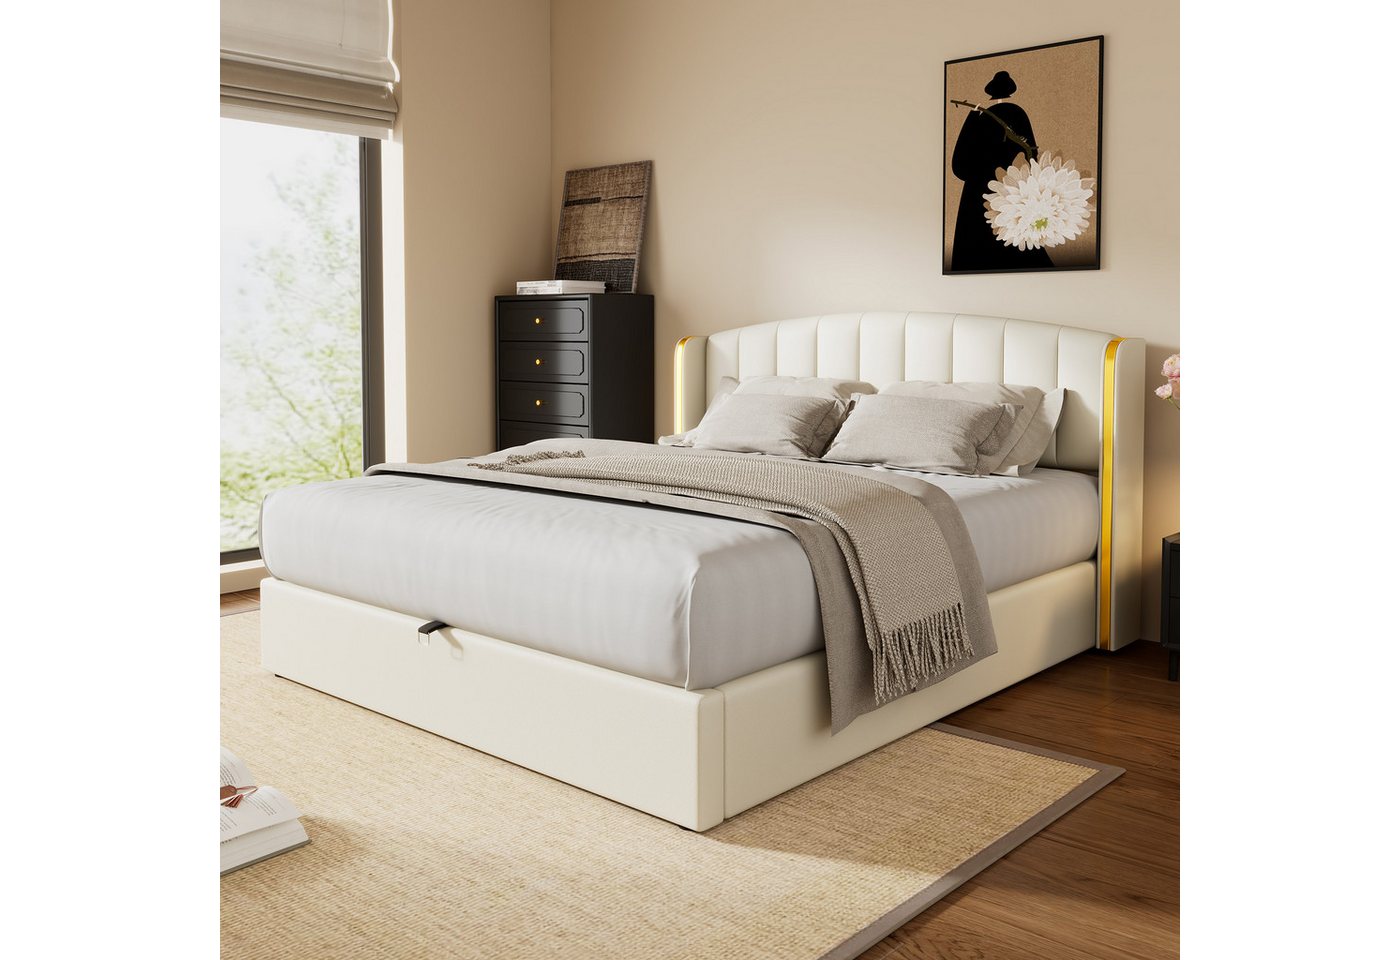 REDOM Polsterbett Hydraulisches Bett (160*200cm), mit goldgerandetes Ohrendesign, Bettkasten, Lattenrost und Kopfteil von REDOM